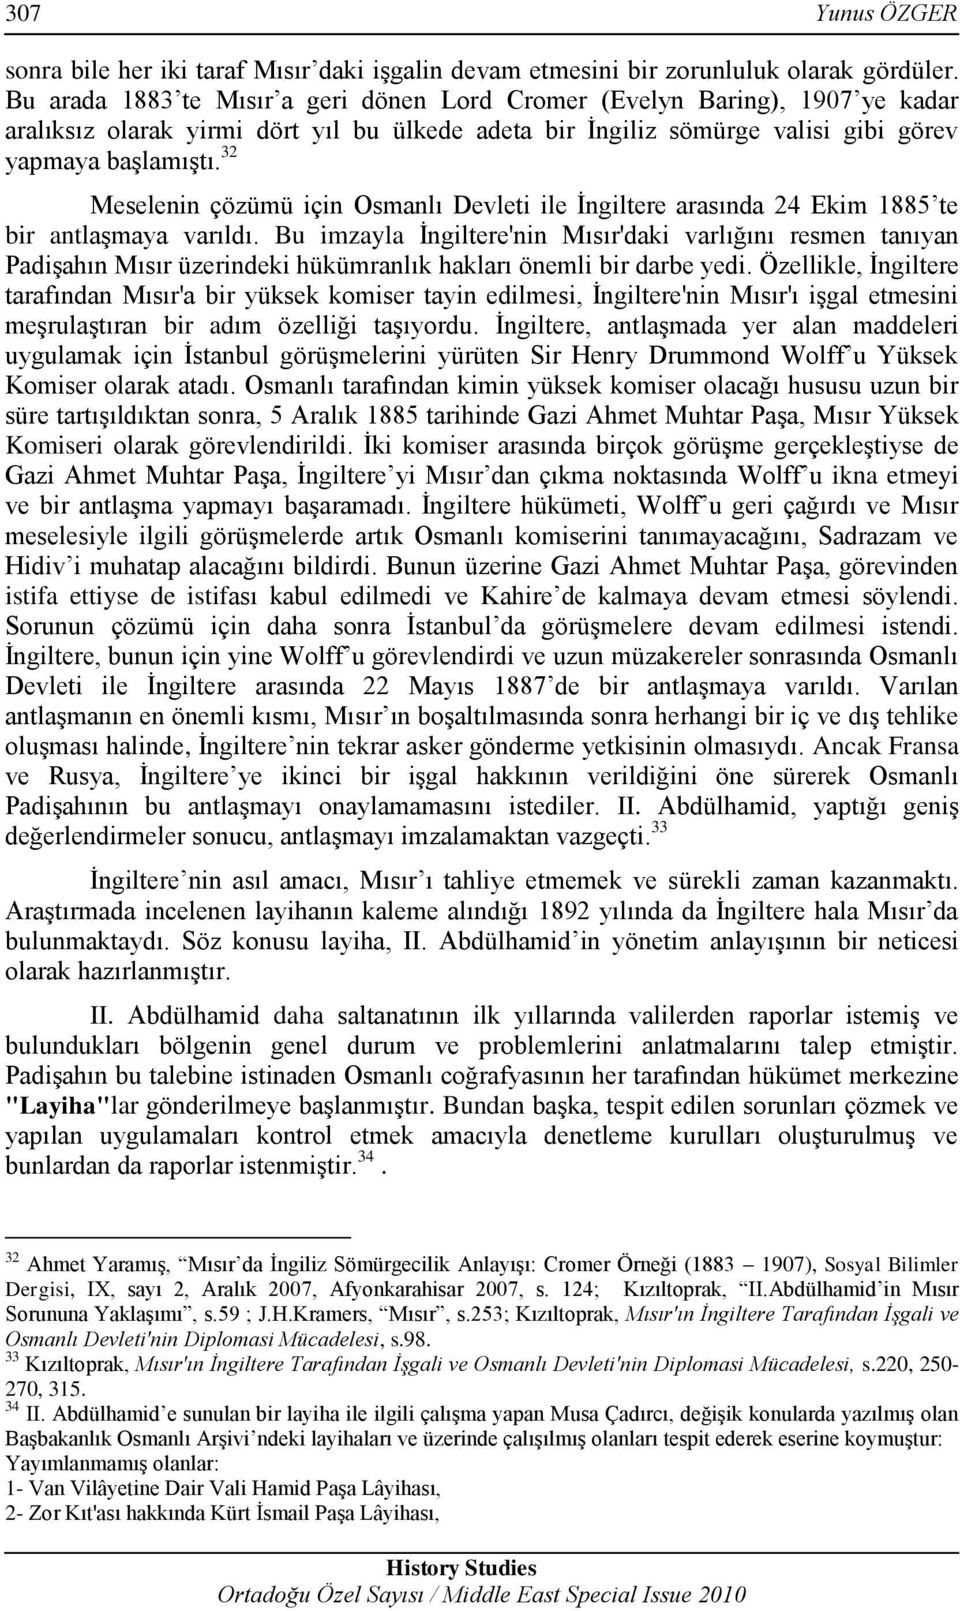 32 Meselenin çözümü için Osmanlı Devleti ile İngiltere arasında 24 Ekim 1885 te bir antlaşmaya varıldı.